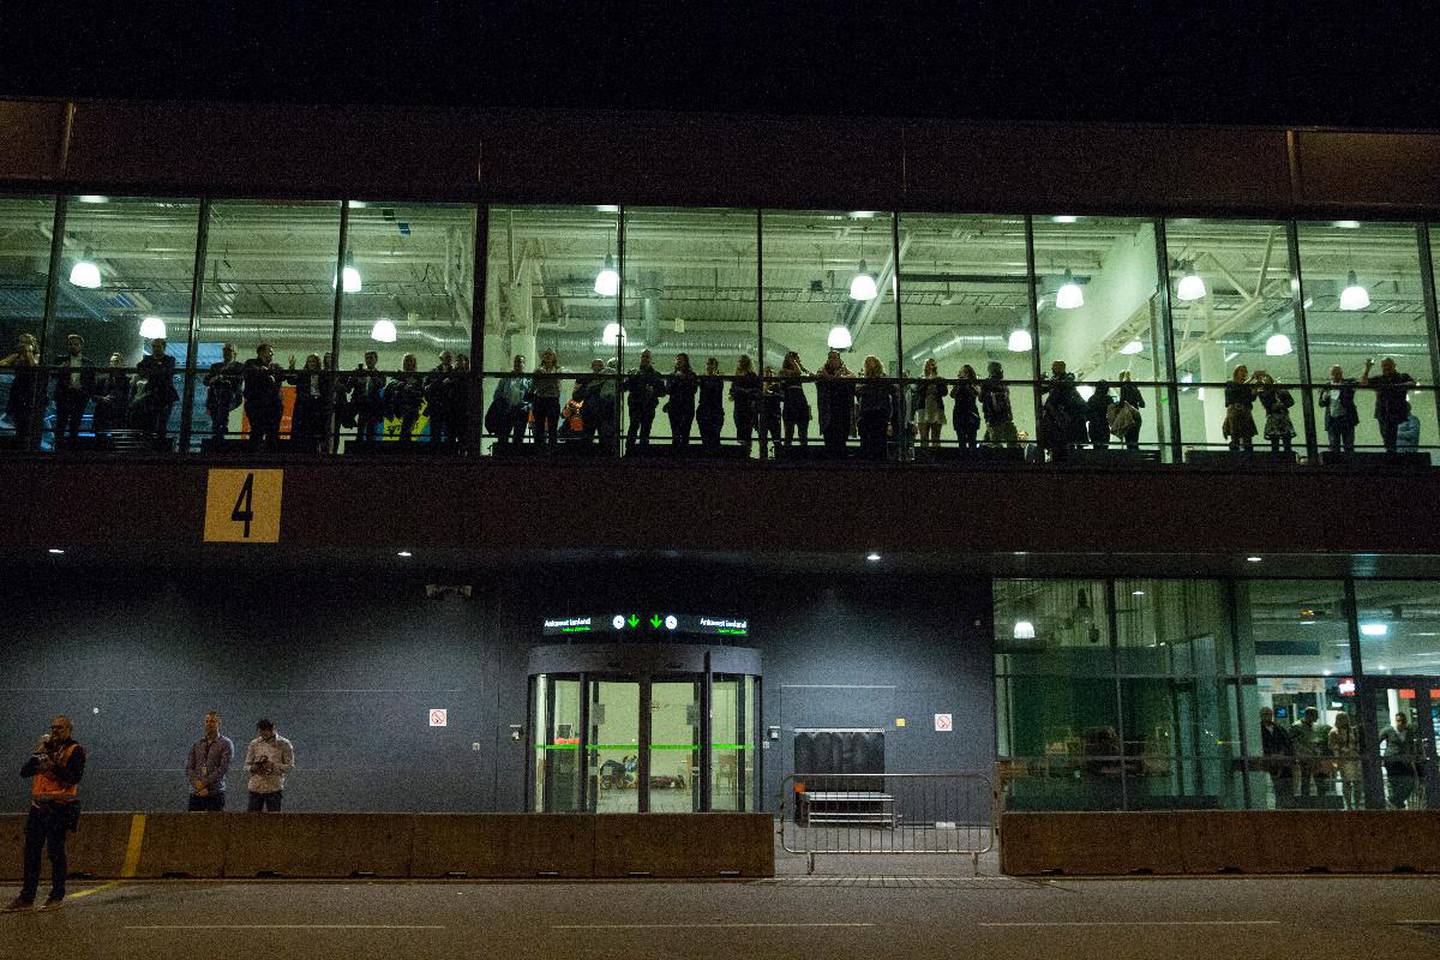 Mange av de ansatte fulgte med da det siste flyet forlot Moss lufthavn Rygge 29. oktober 2016. Samme kveld tok de en avslutningsfest i terminalbygget.